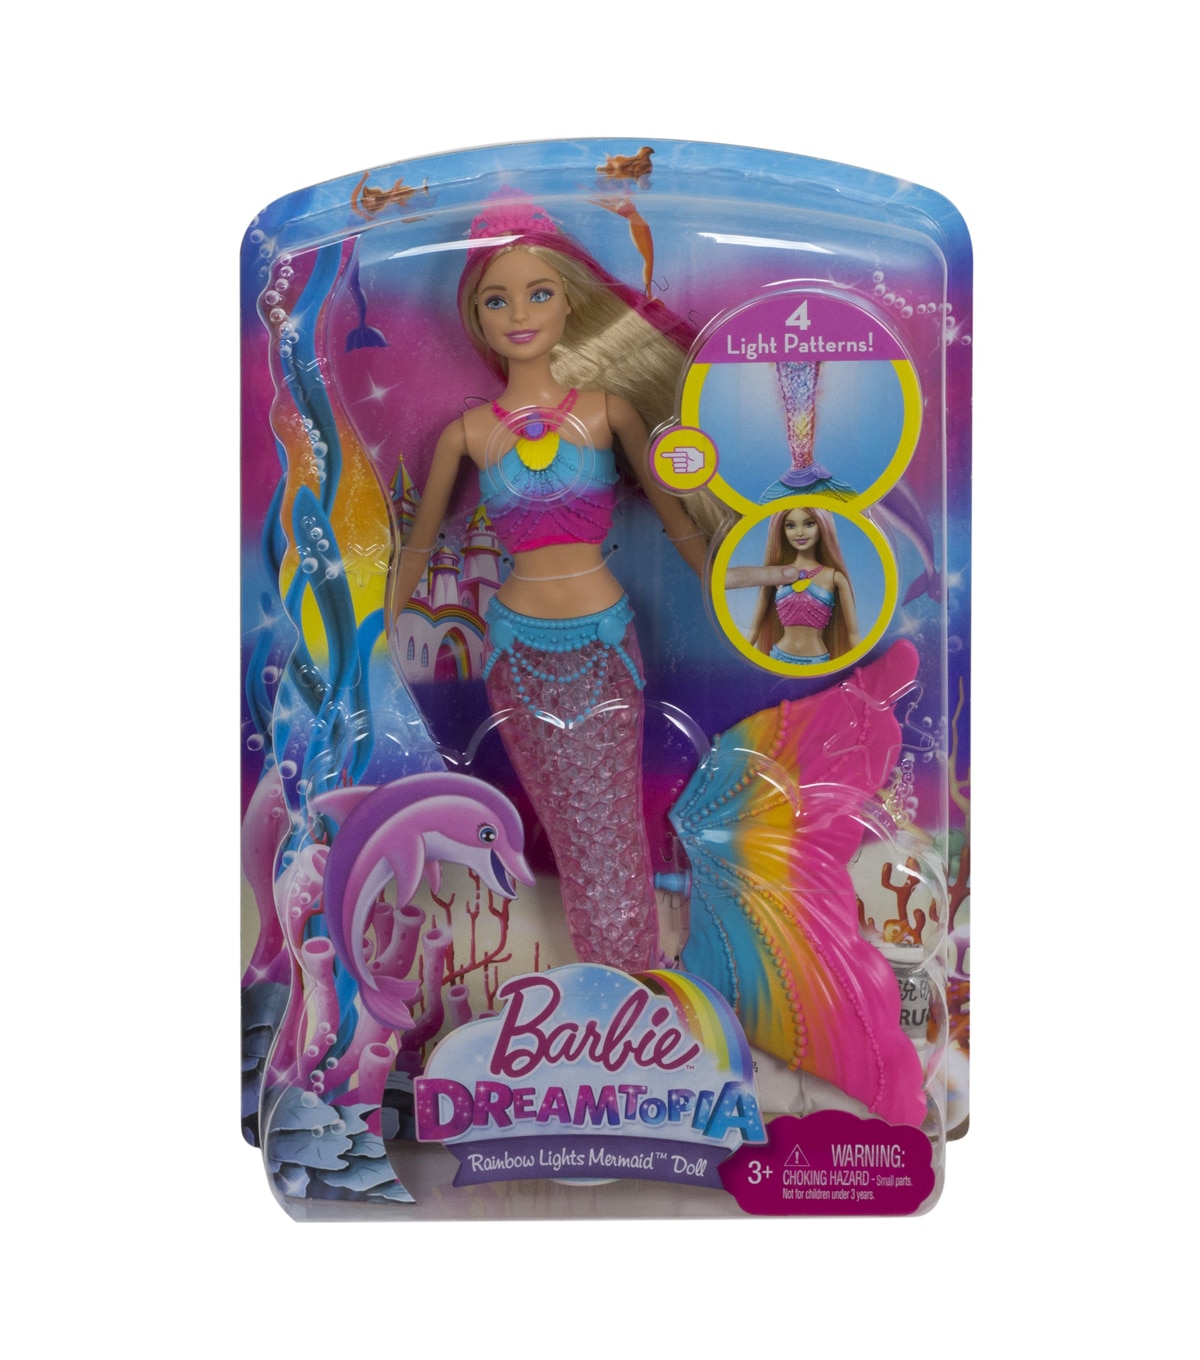 mermaid barbie dreamtopia